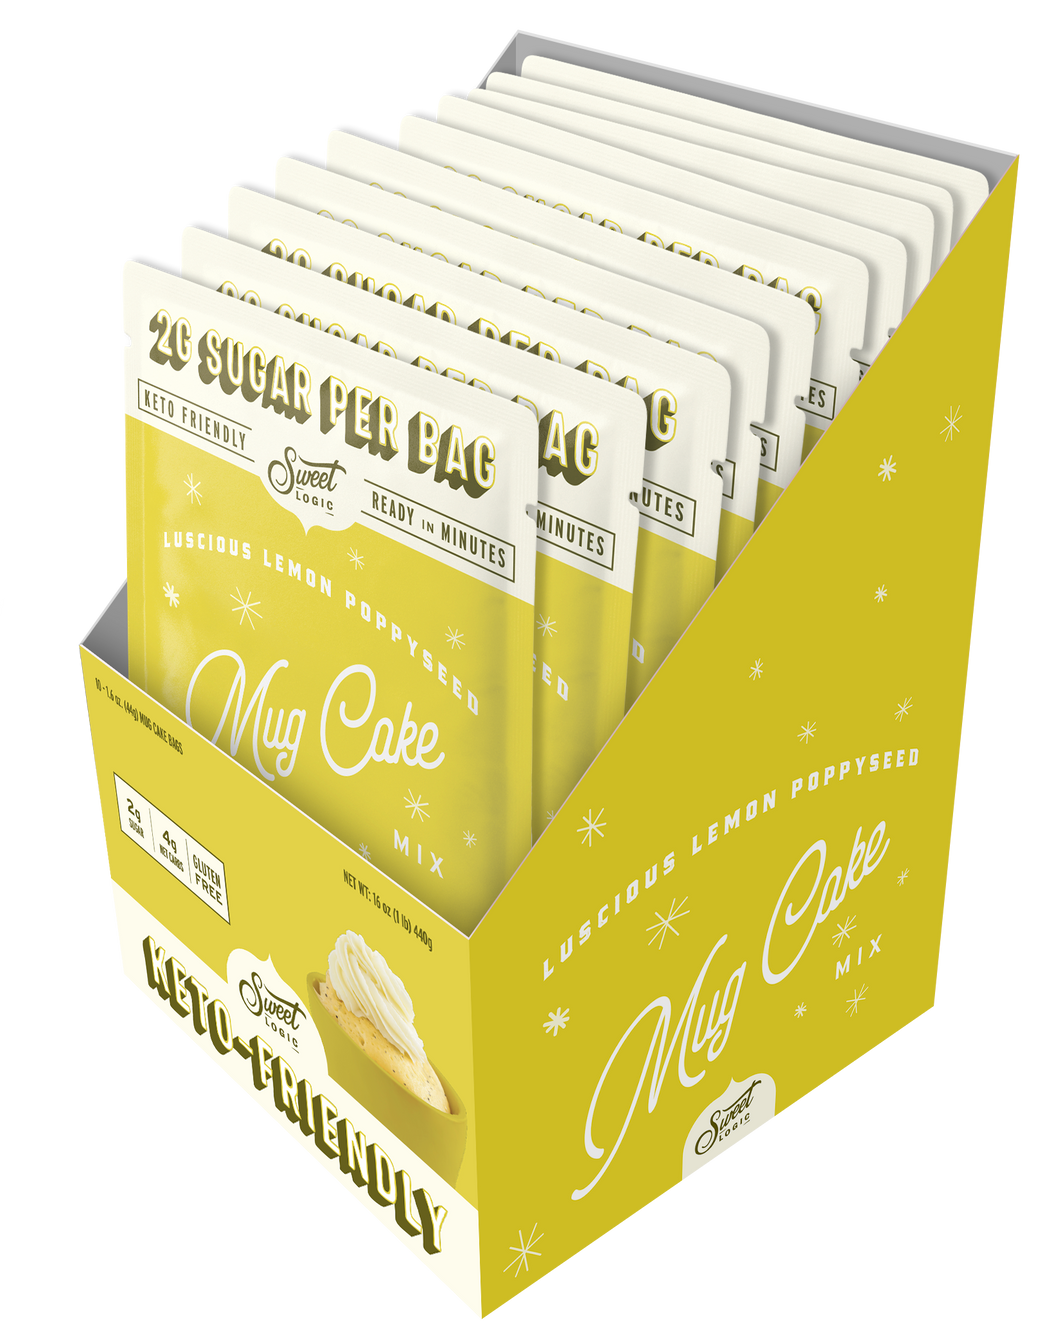 Lemon Poppy Seed Mug Cake (10-Pack) - Retail Box